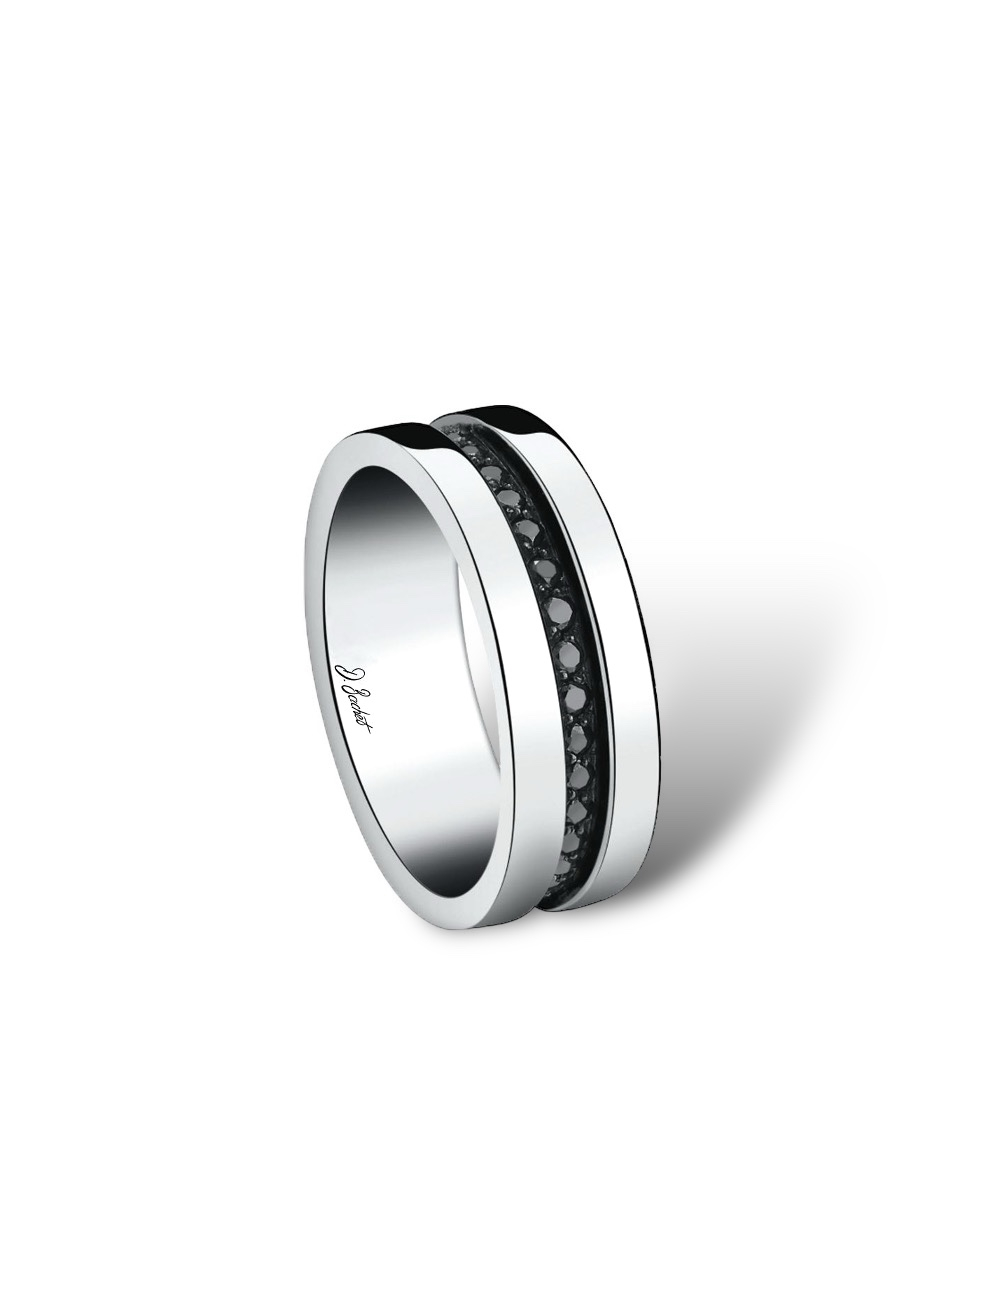 Alliance homme 7 mm en platine avec diamants noirs, design contemporain masculin, confortable, aussi avec diamants blancs.